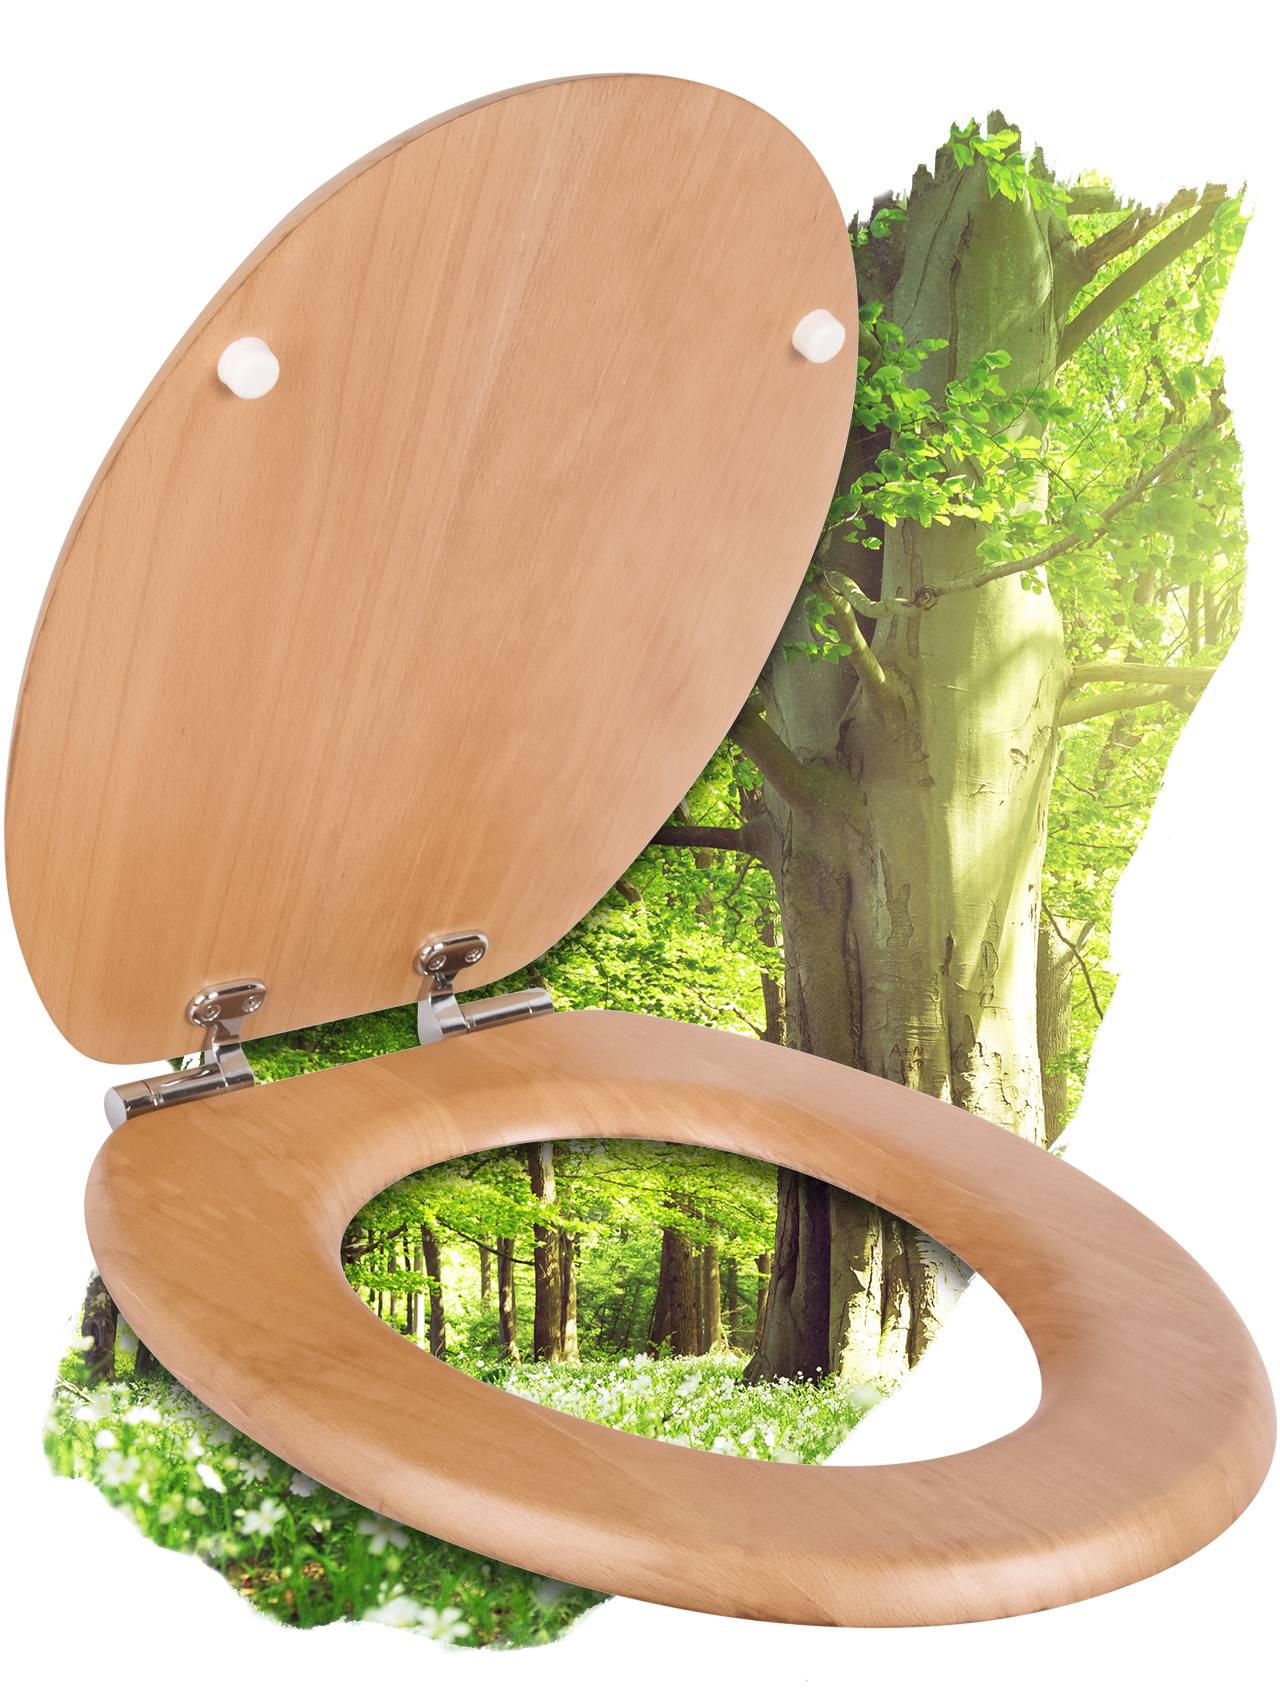 WC-Sitz Holz aus Echtholz-Furnier Buche mit Absenkautomatik, Fast-Fix und Edelstahlscharnier, oval